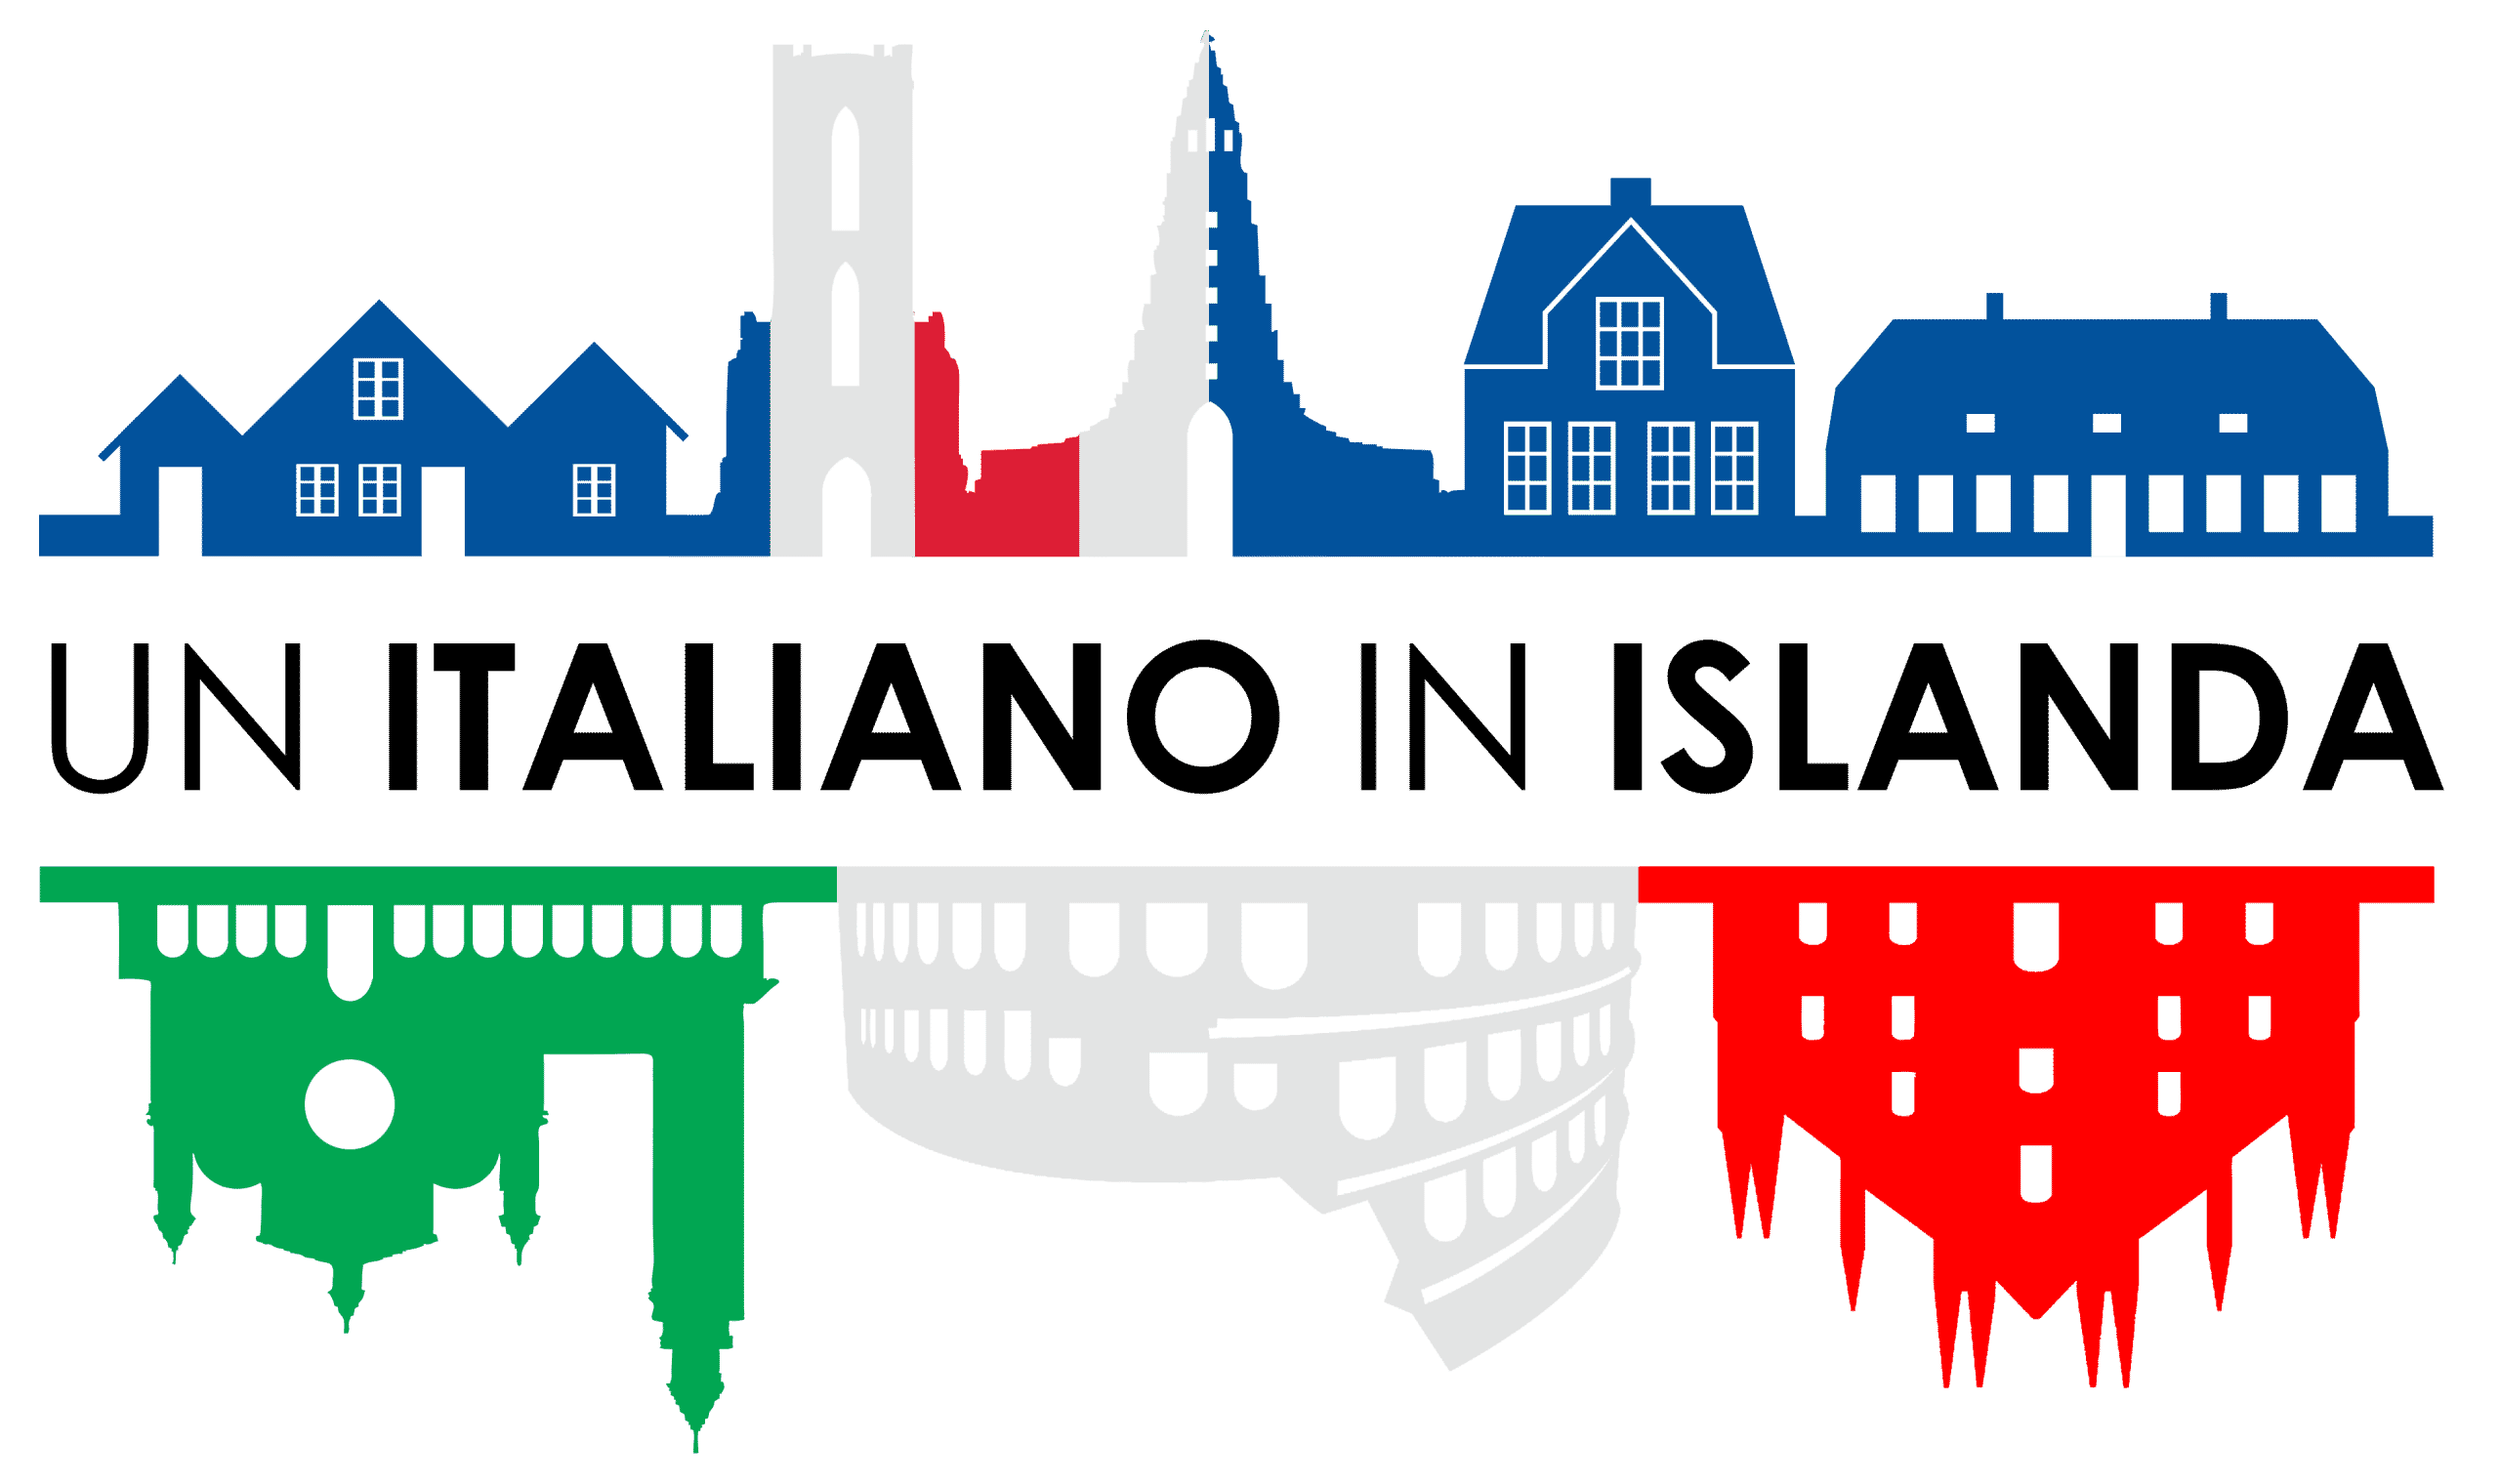 Un italiano in Islanda partner dell'Istituto Culturale Nordico